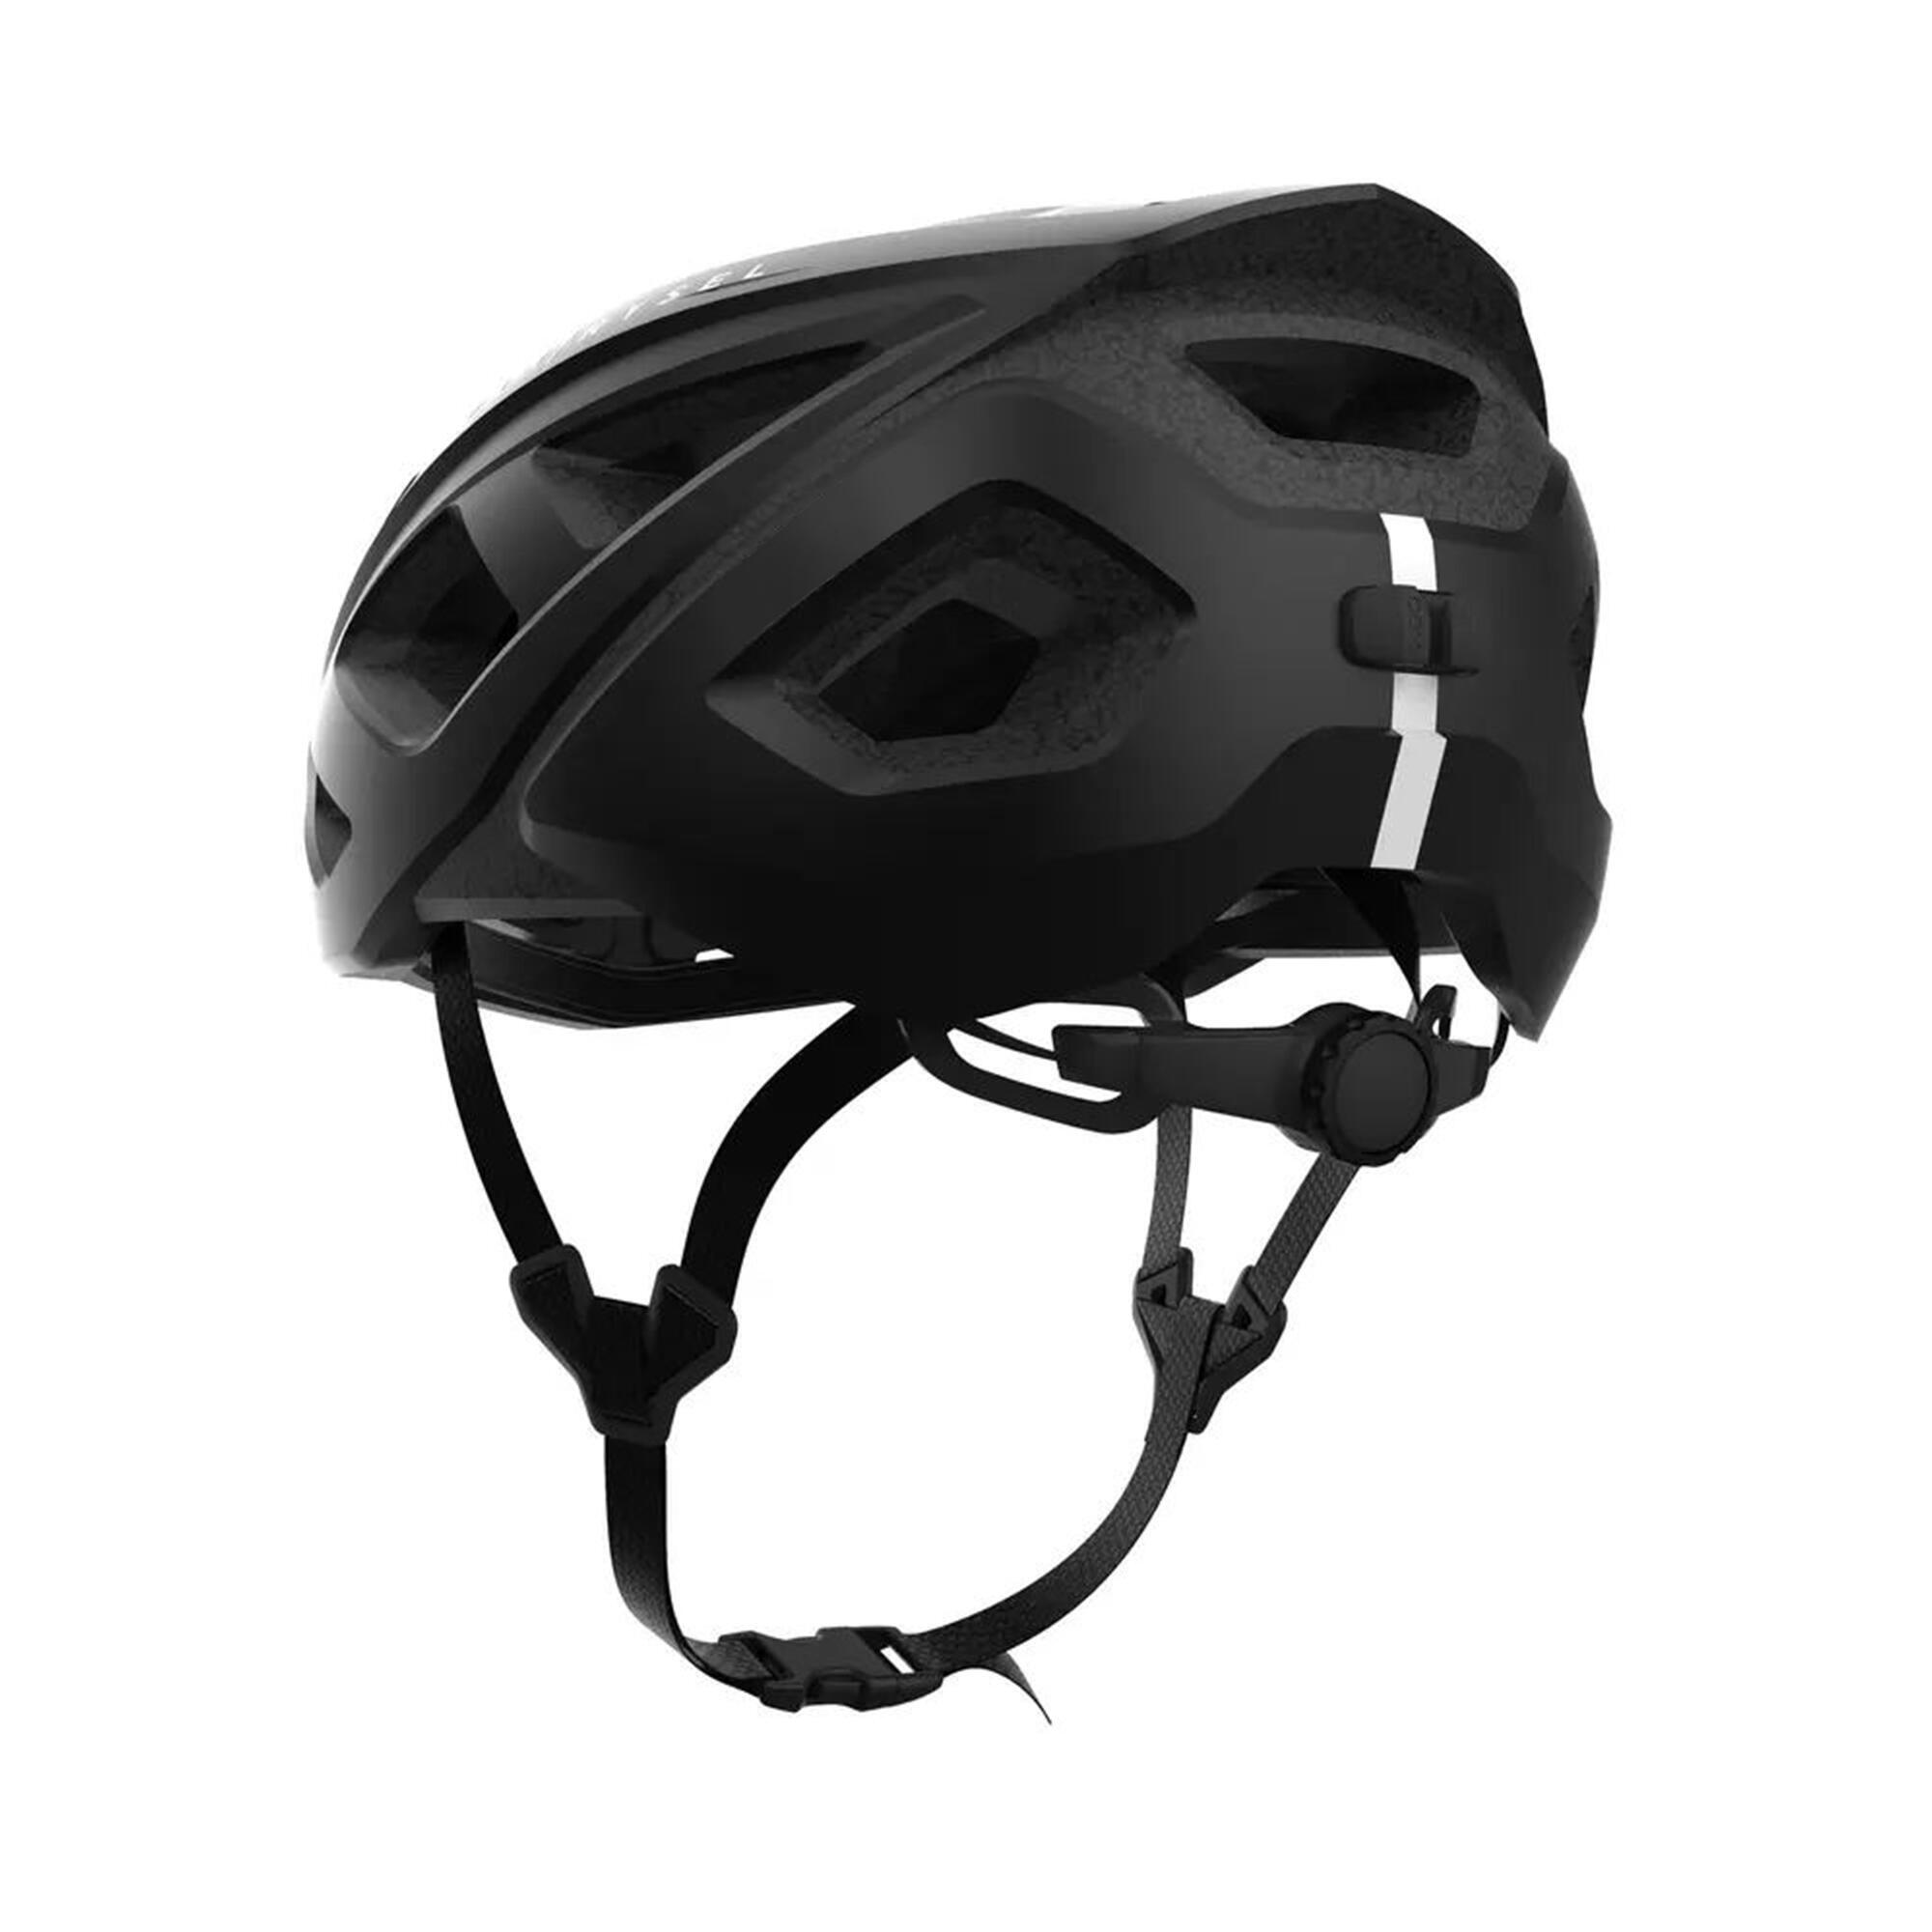 VAN RYSEL RoadR 500 Road Cycling Helmet - Black